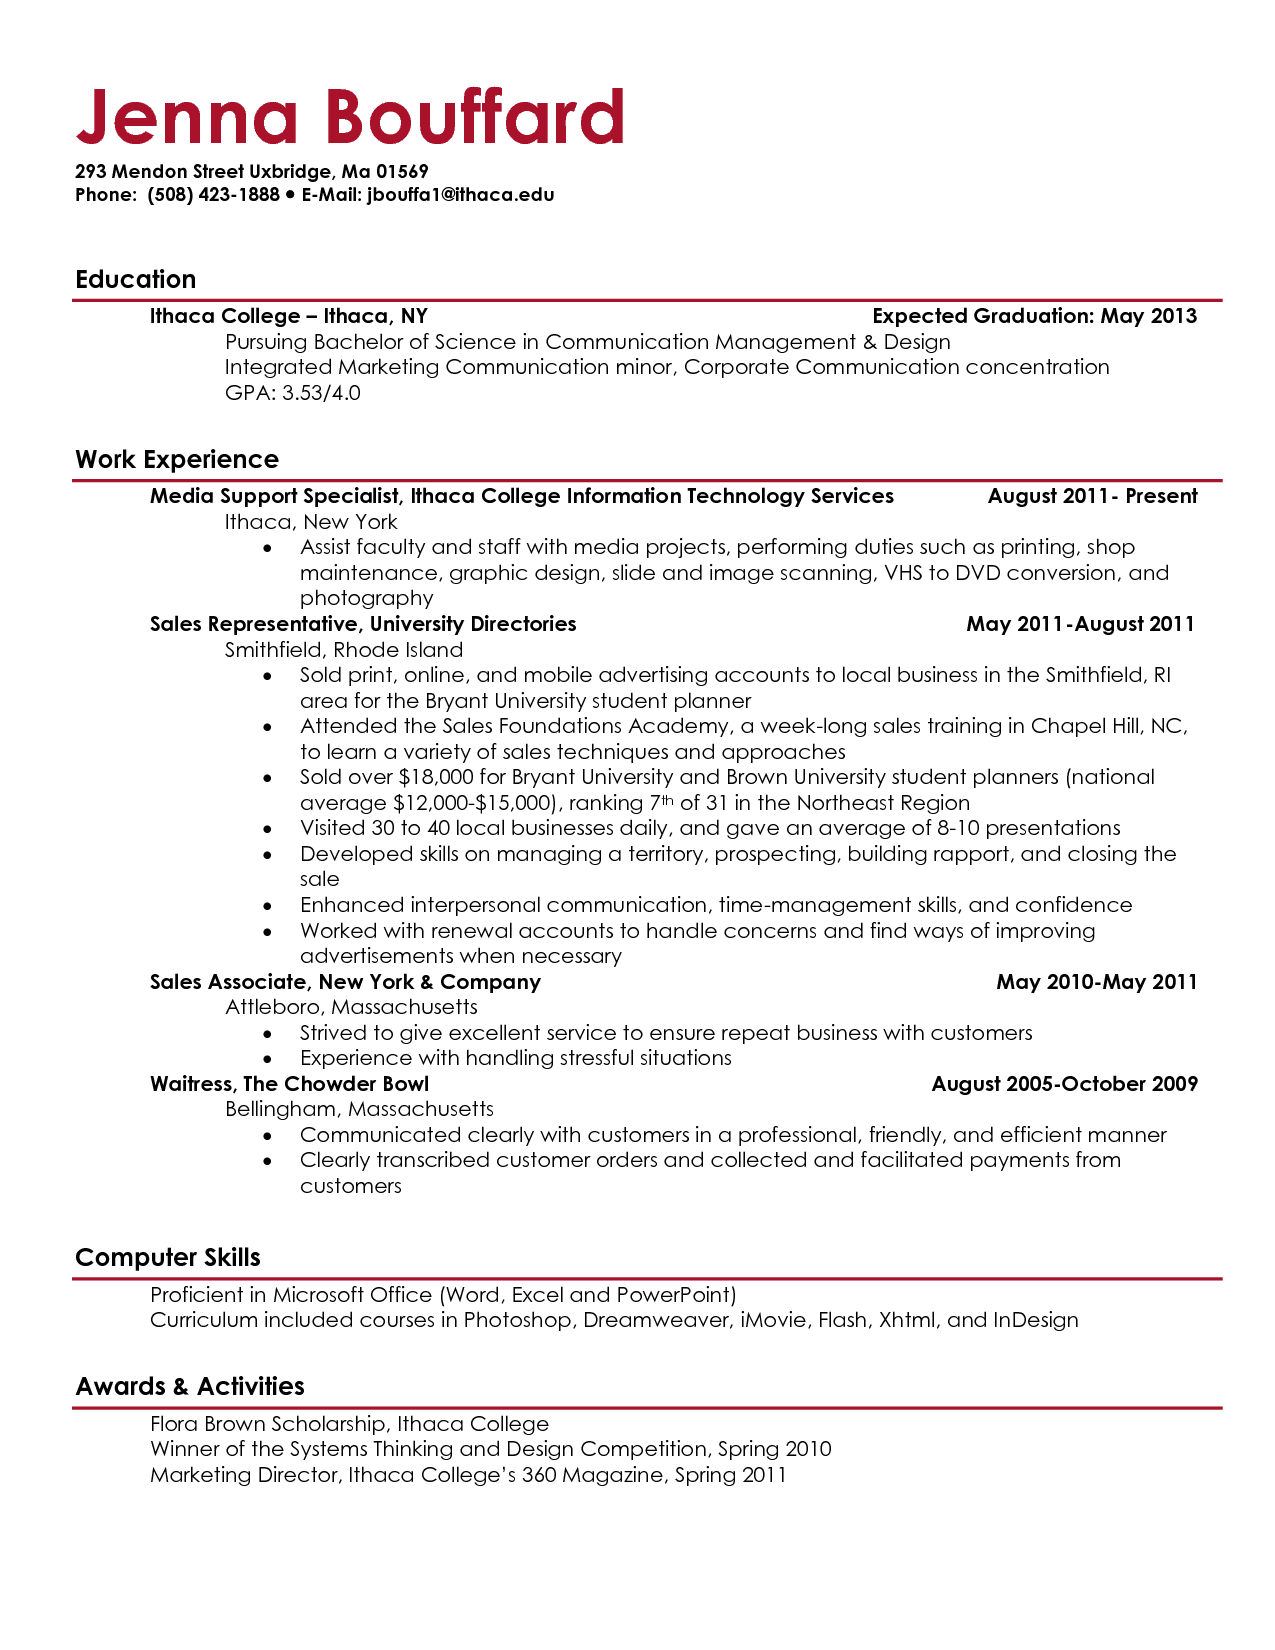 Current College Student Resume | berathen.Com